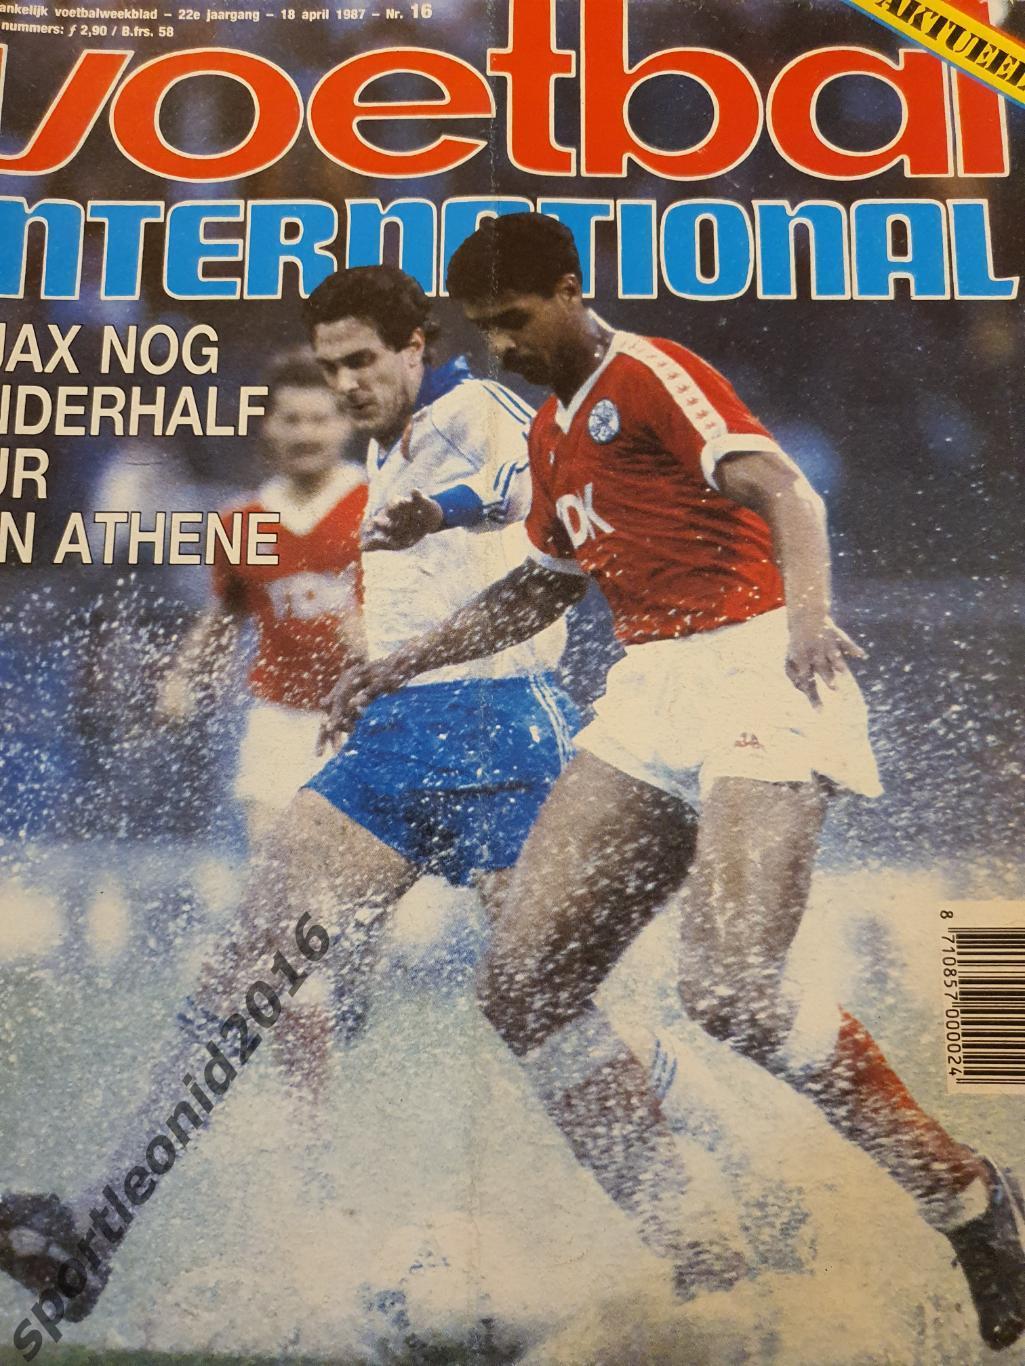 Voetbal International 1988+87.10 топ выпусков.В том числе И ВСЕ к ЧМ-88.4 5